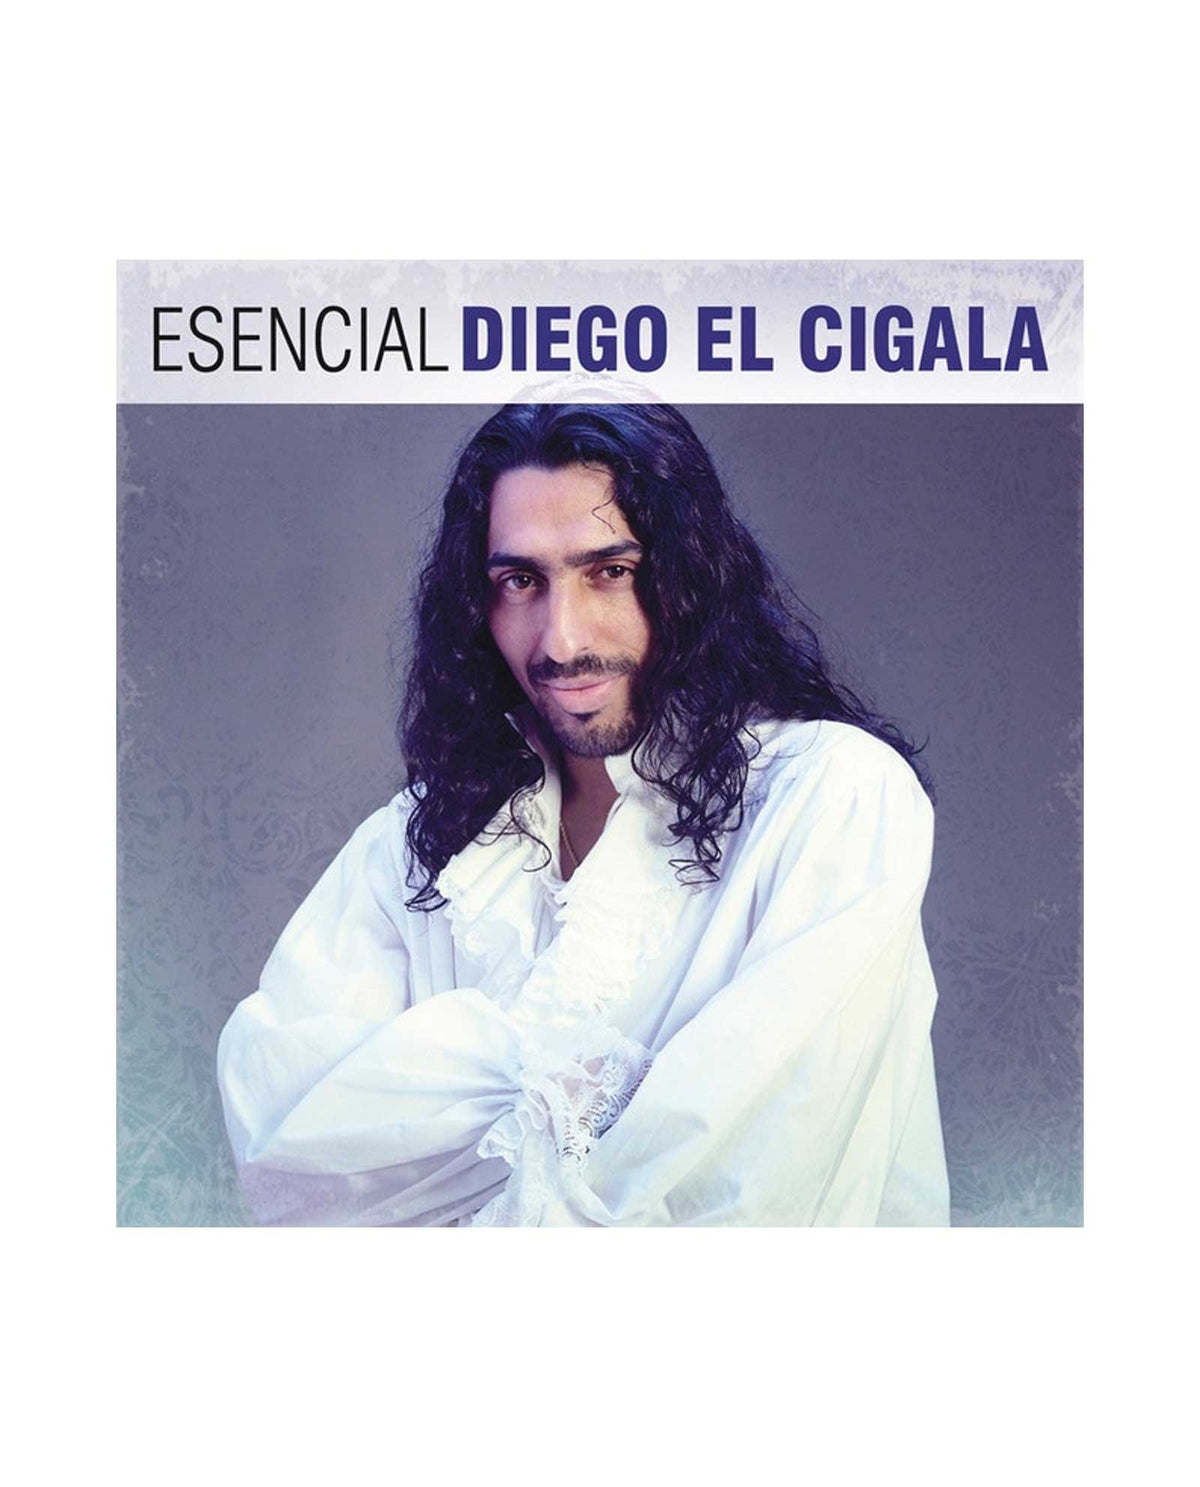 El Cigala - 2CD "Esencial" - D2fy · Rocktud - El Cigala